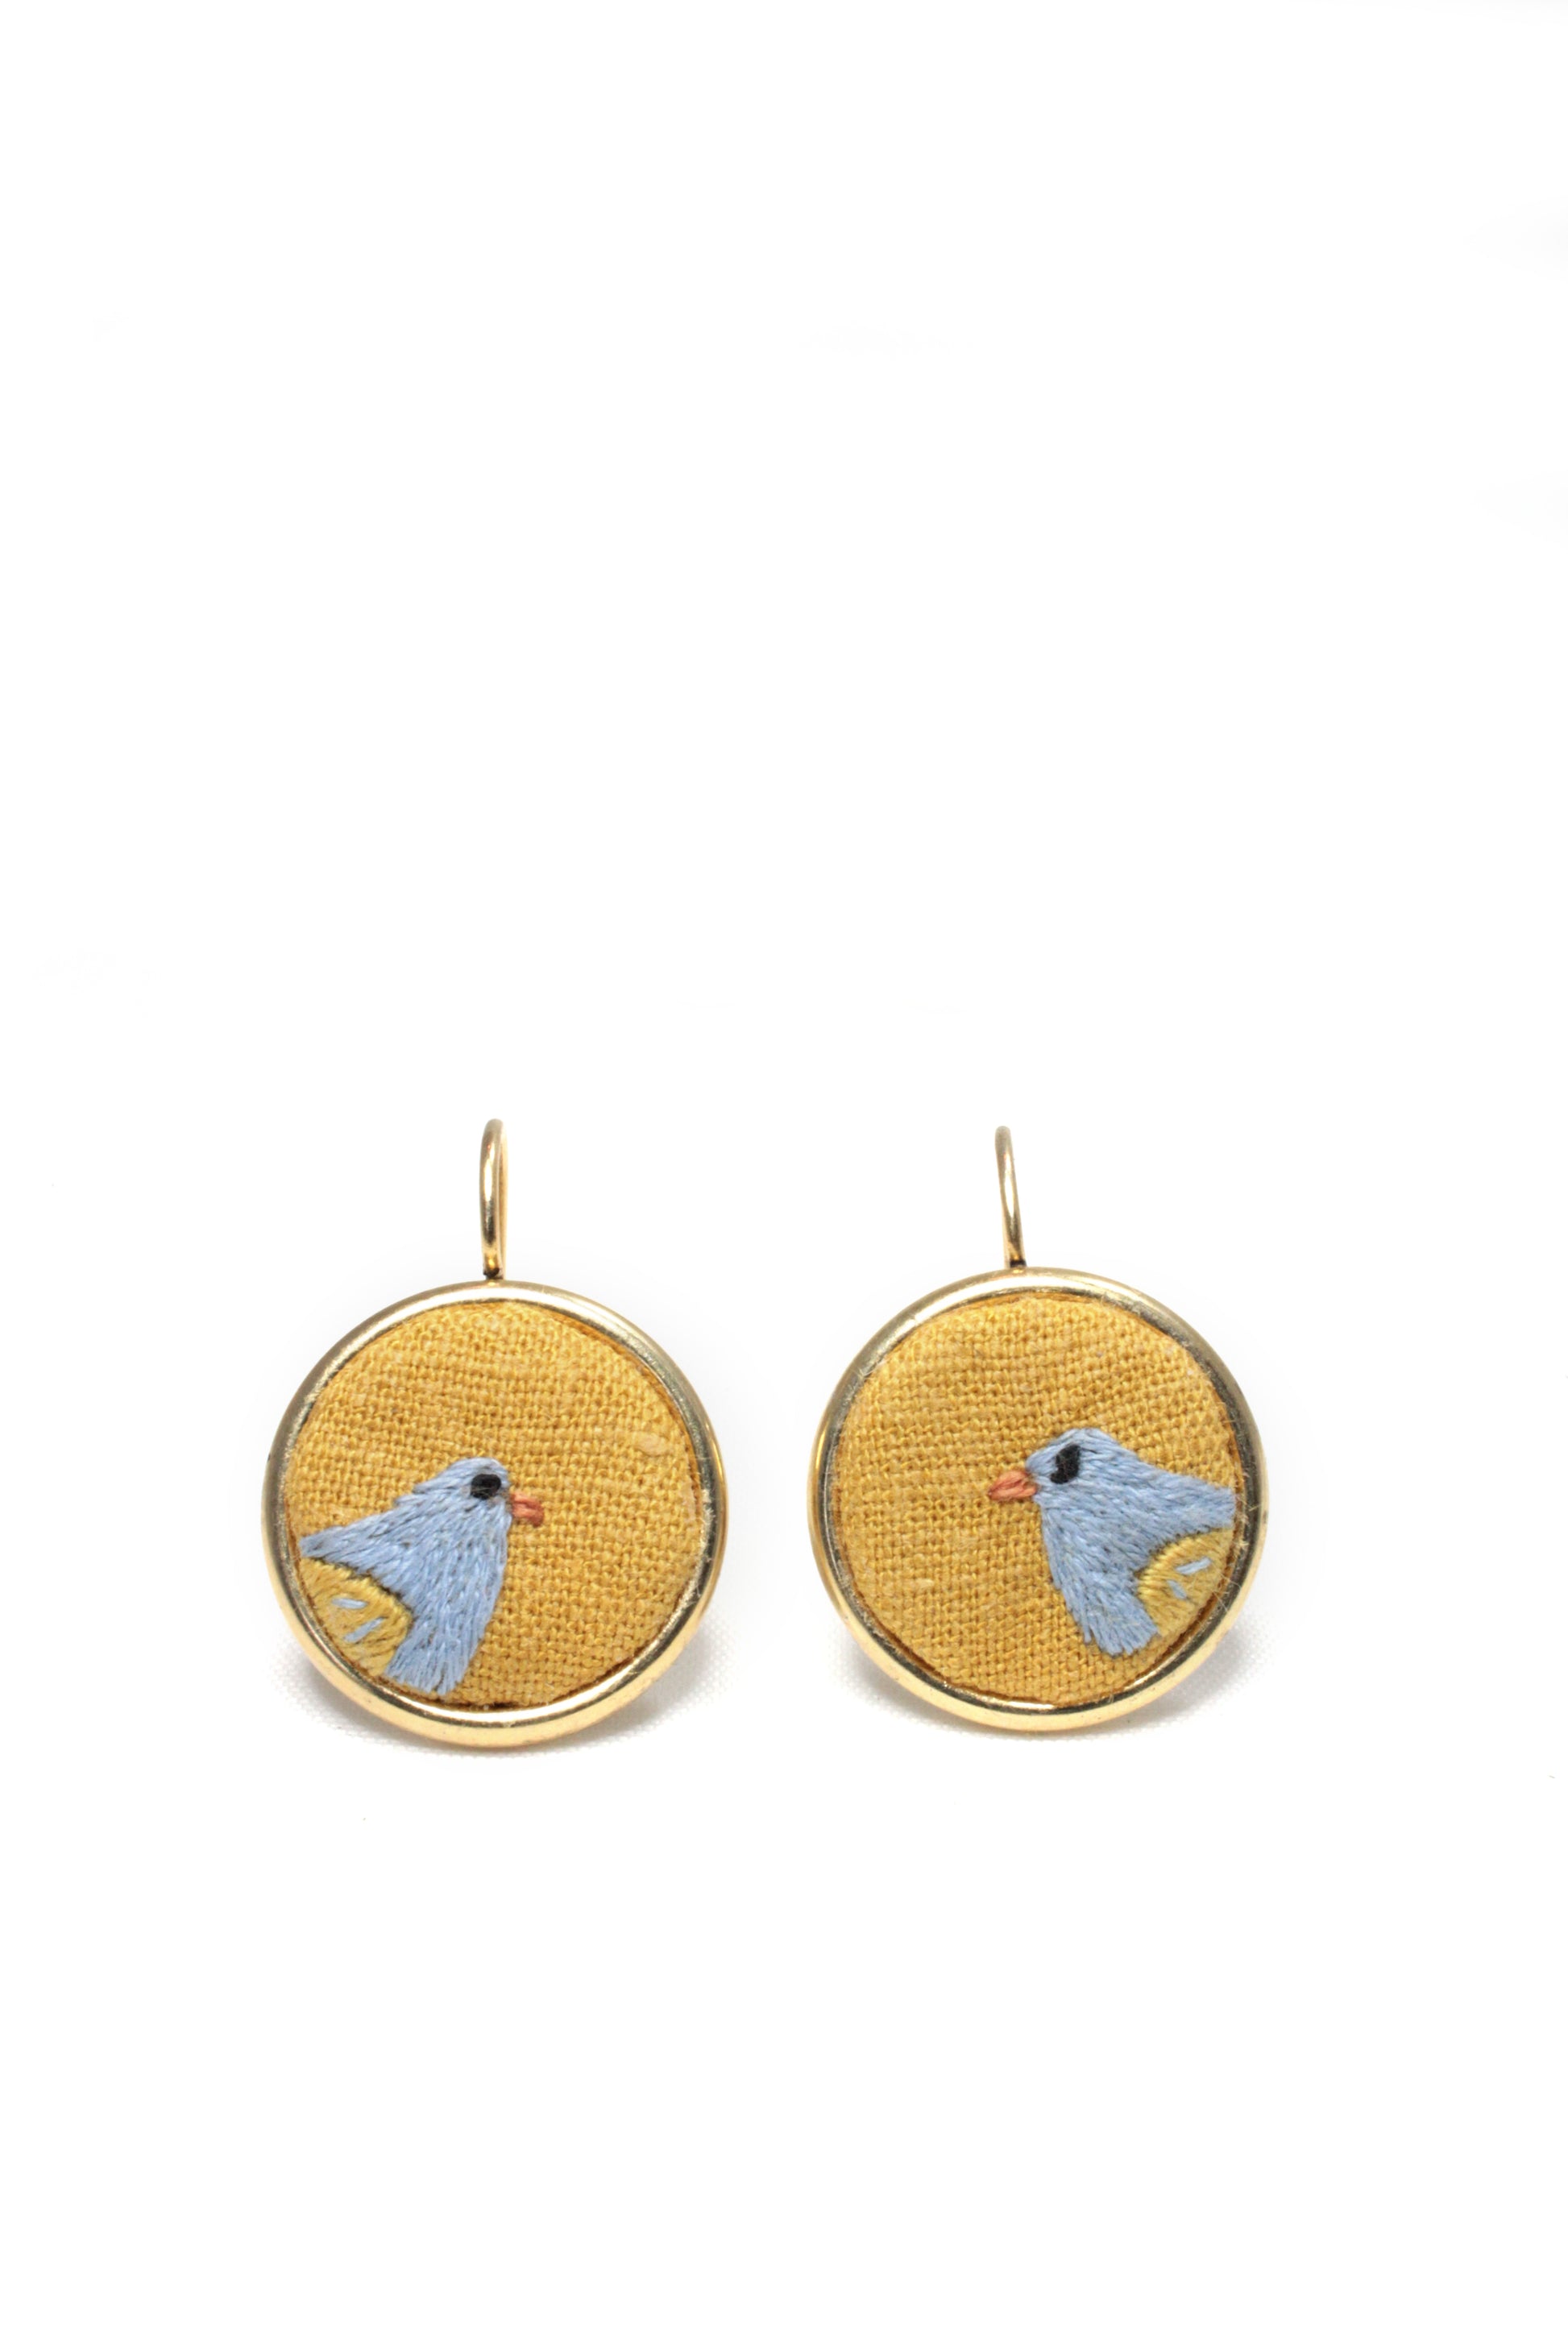 Embroidery Bird Earrings